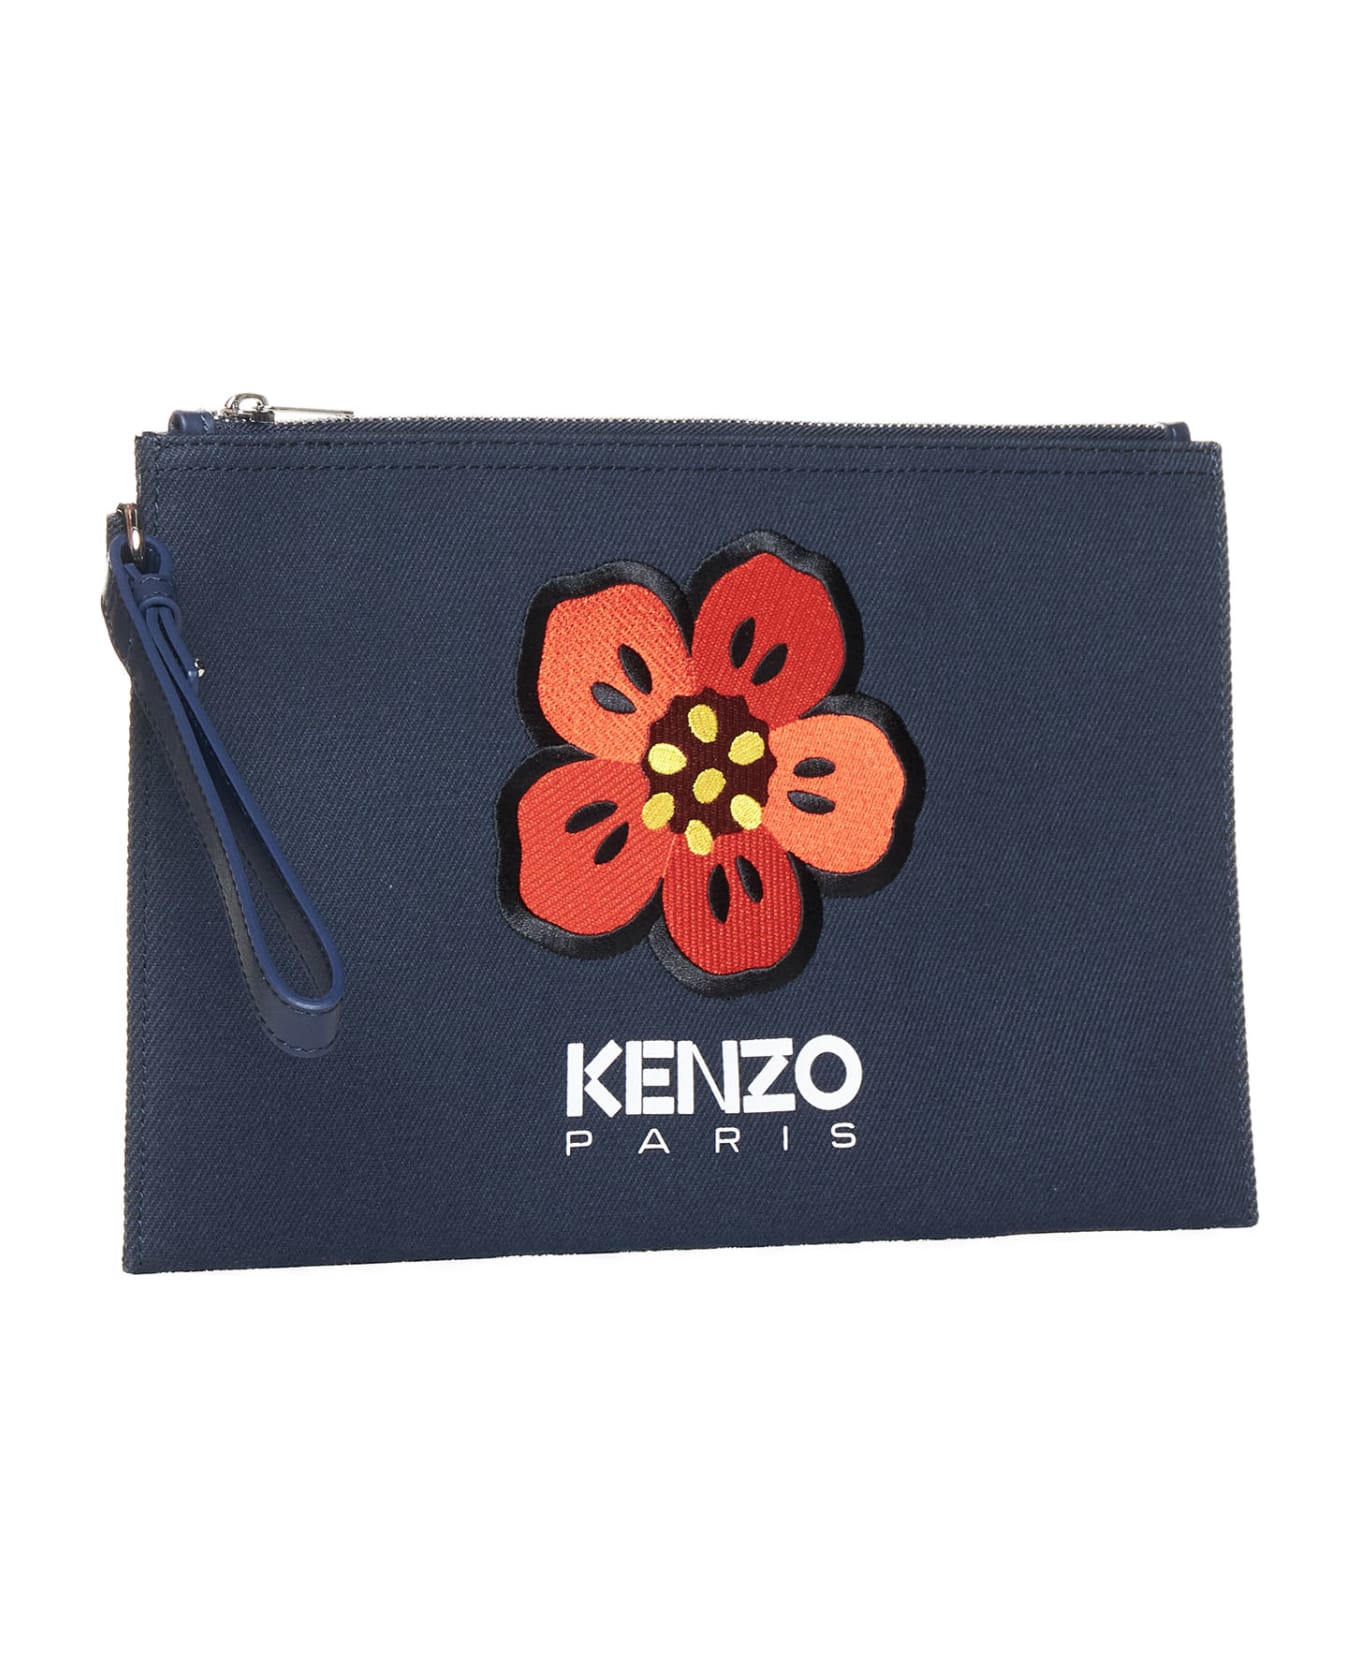 Kenzo 'boke Flower' Clutch - Navy blue